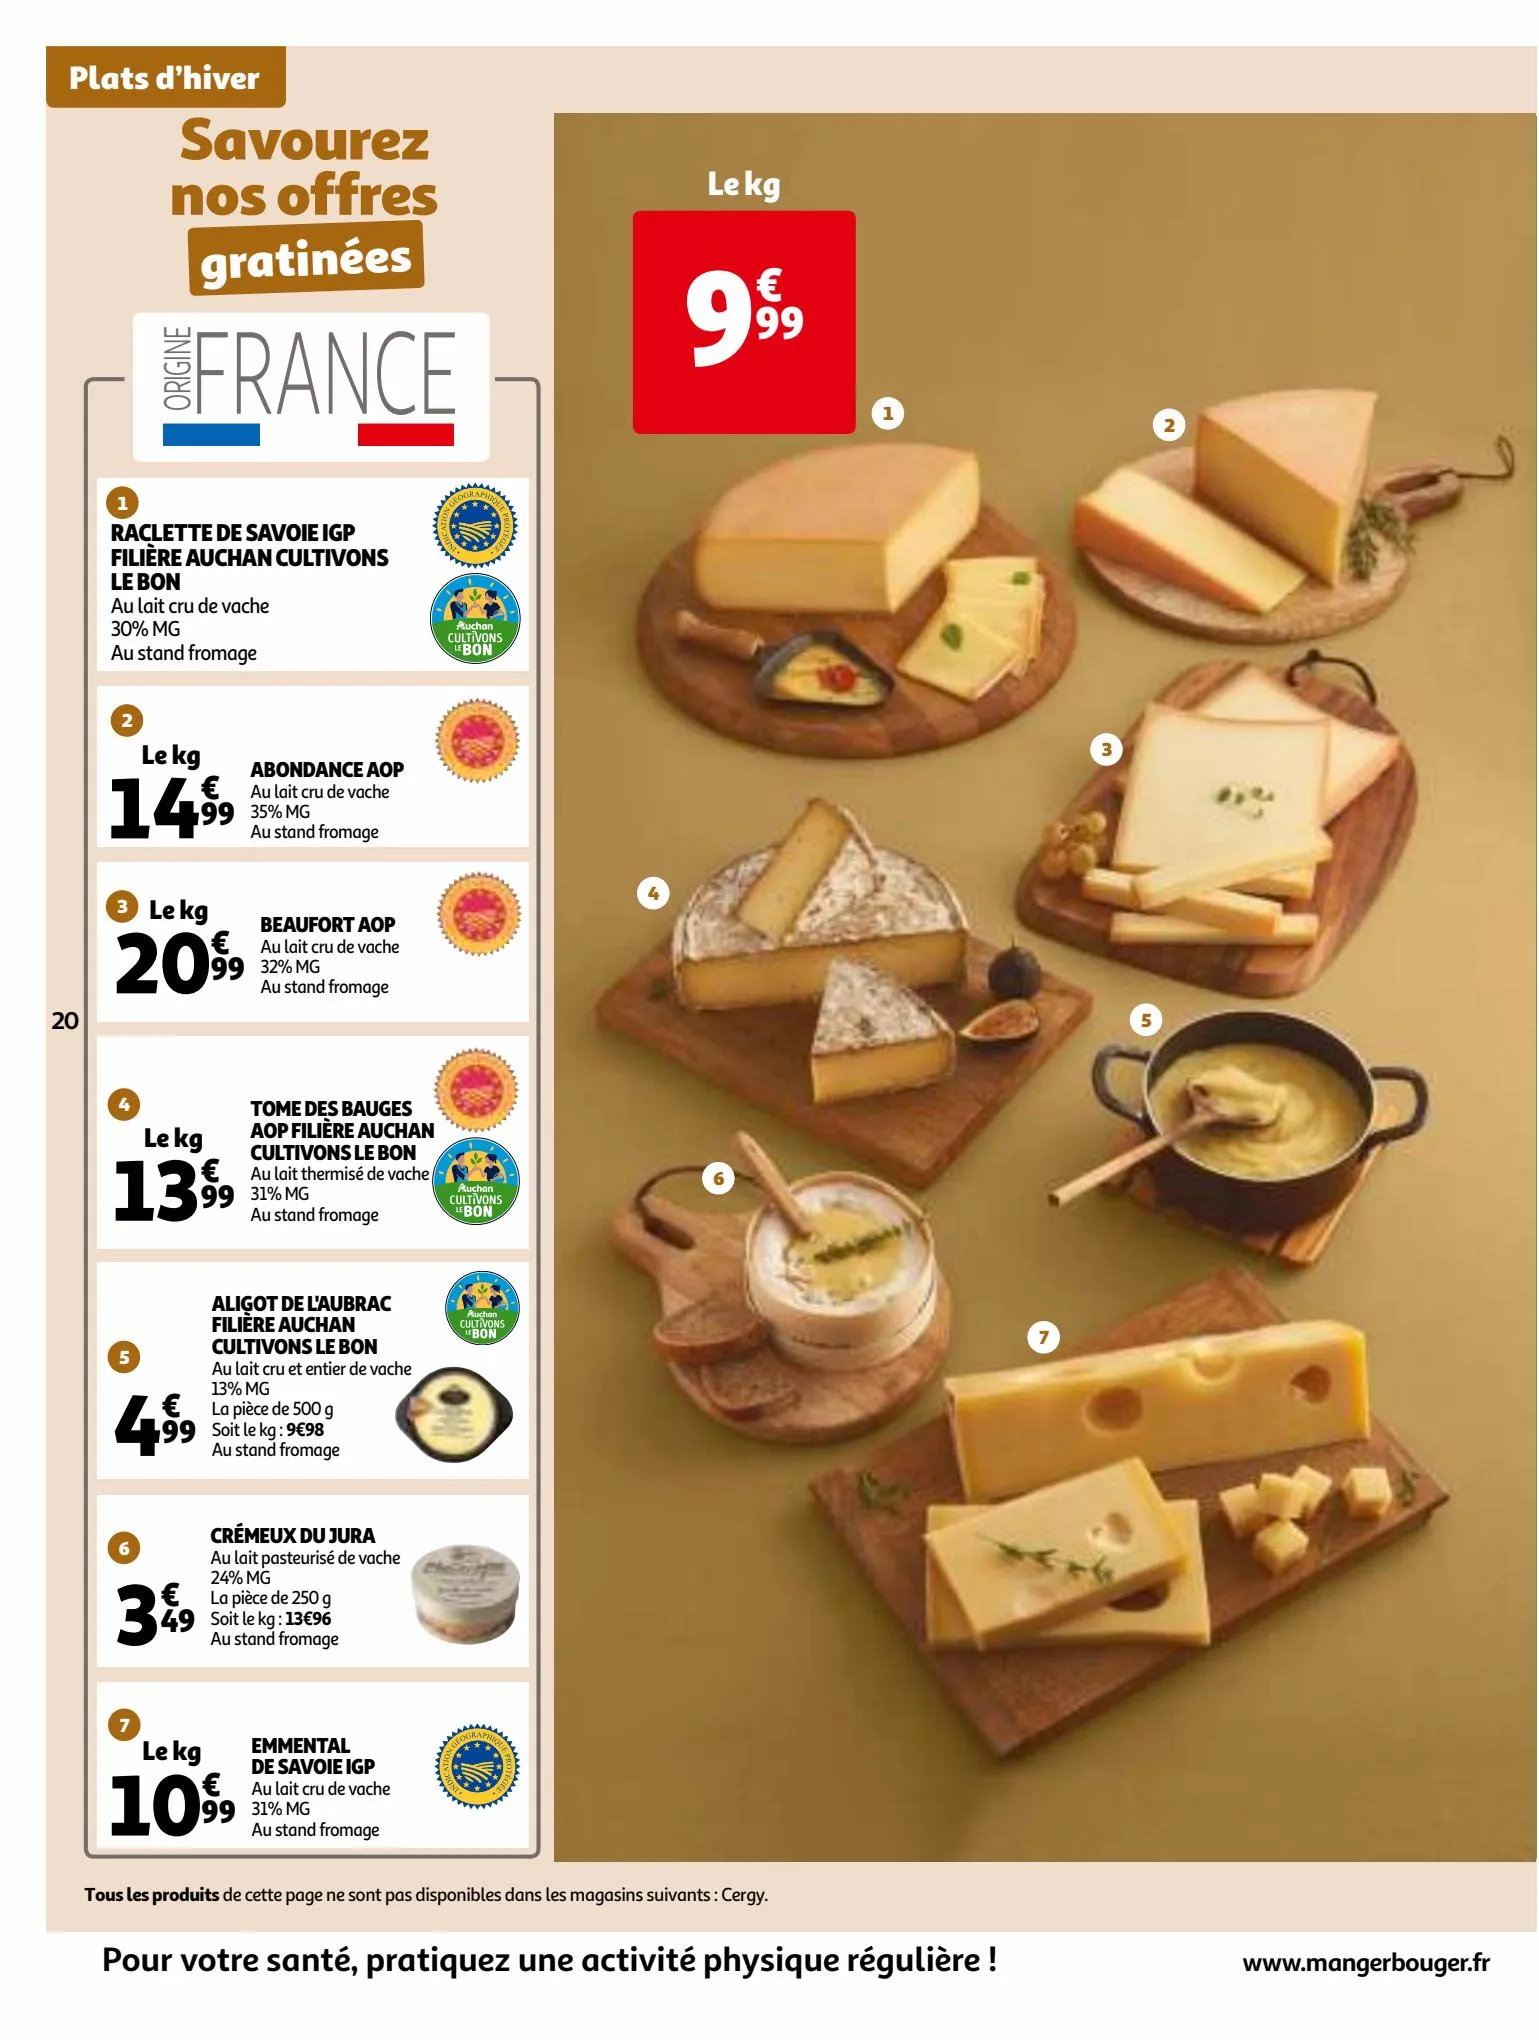 Catalogue 25 Jours Auchan, page 00020